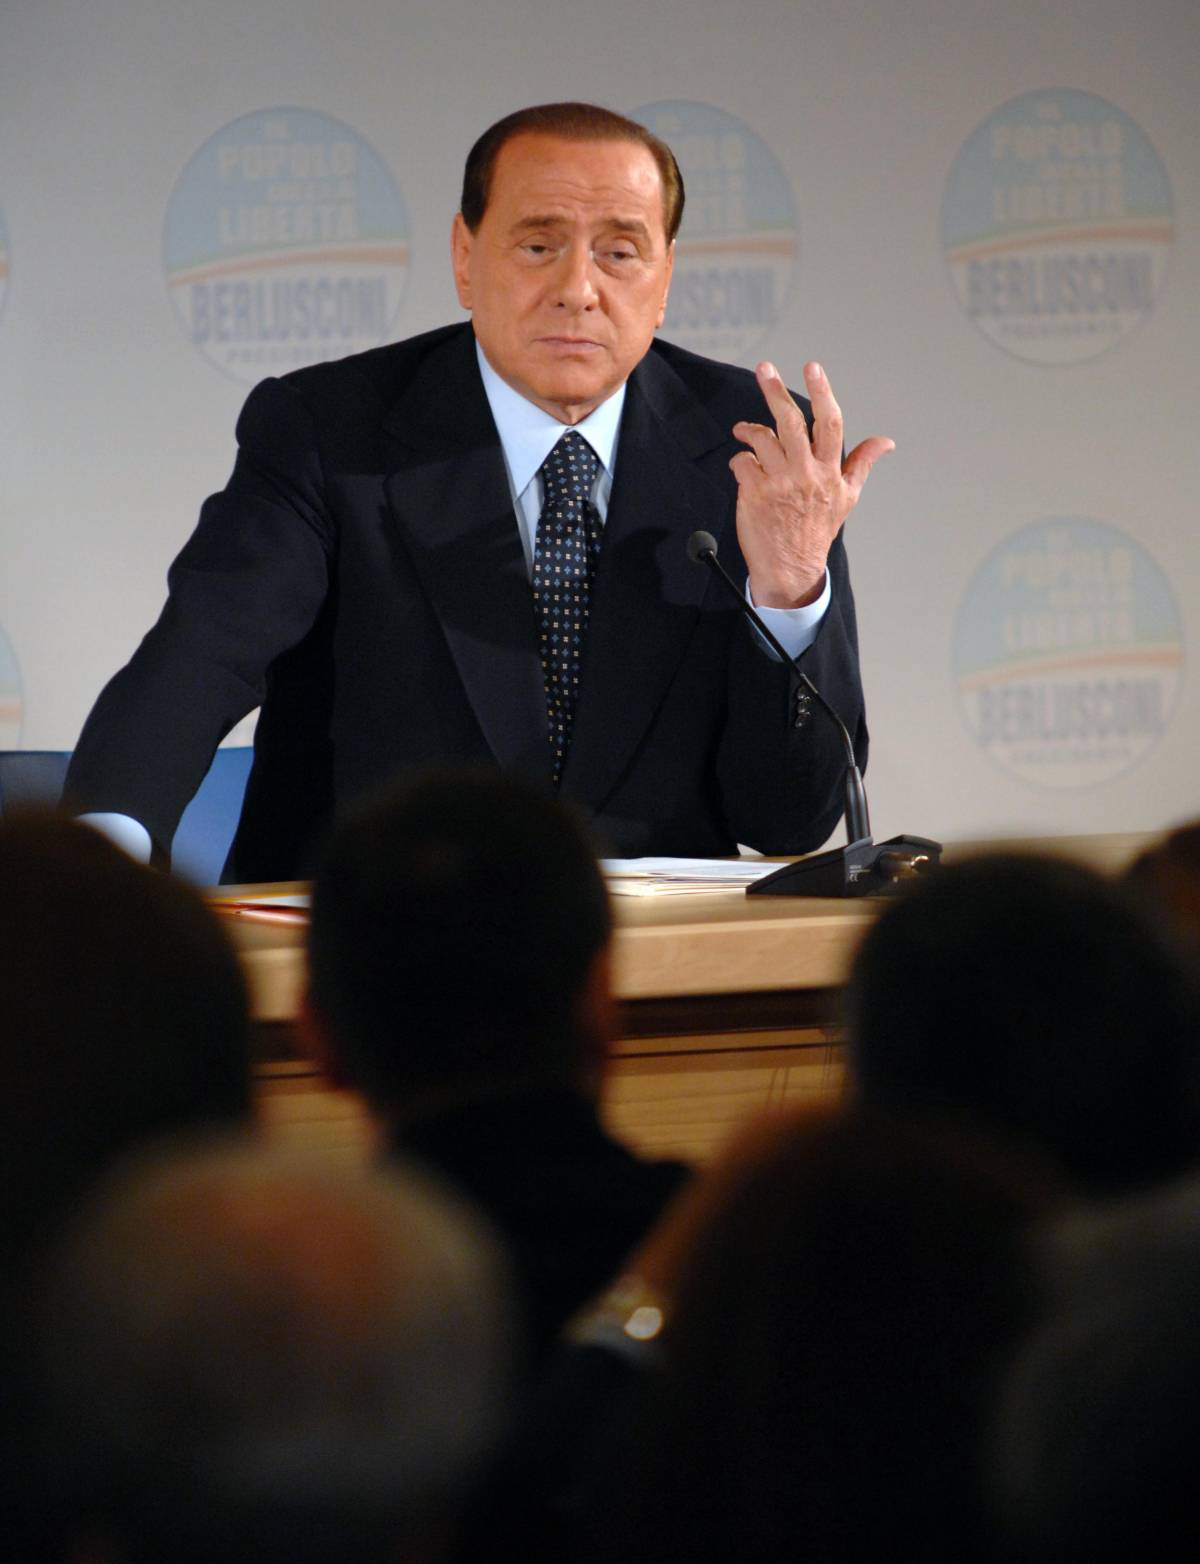 Il Times attacca: "Cade la maschera del clown" 
Berlusconi: "Stampa estera ispirata da sinistra"